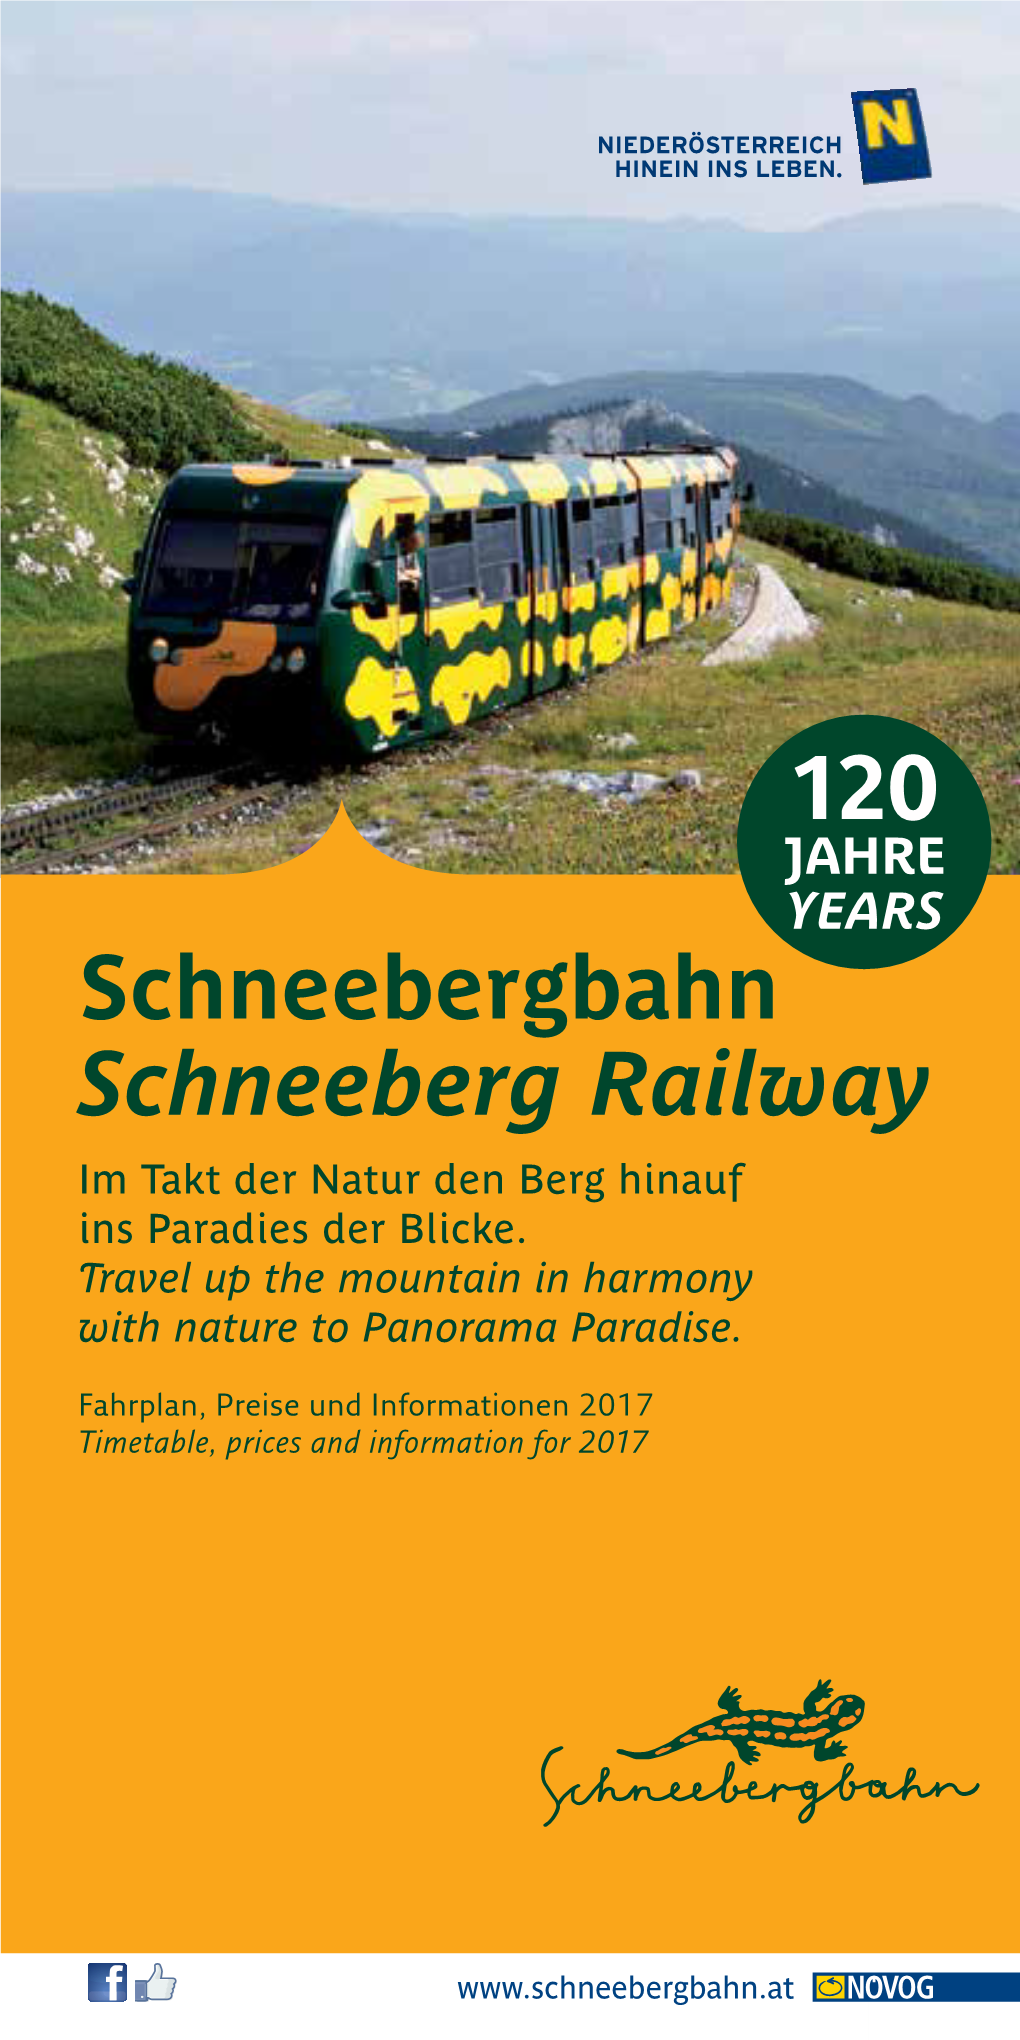 Schneebergbahn Schneeberg Railway Im Takt Der Natur Den Berg Hinauf Ins Paradies Der Blicke